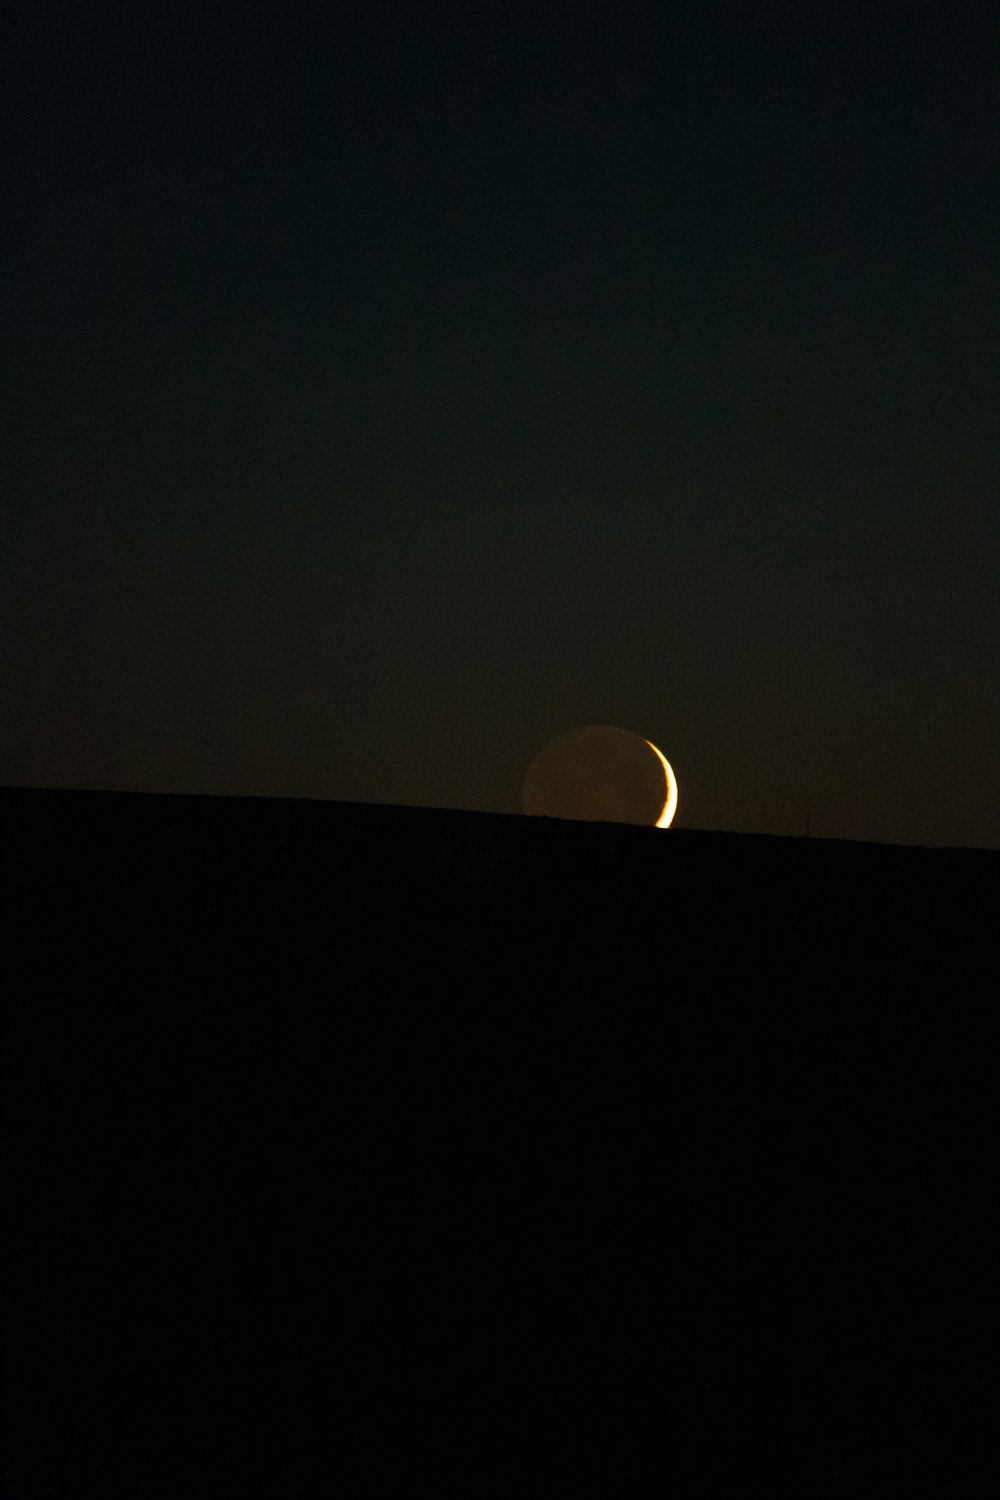 a lua está se pondo sobre o horizonte do horizonte